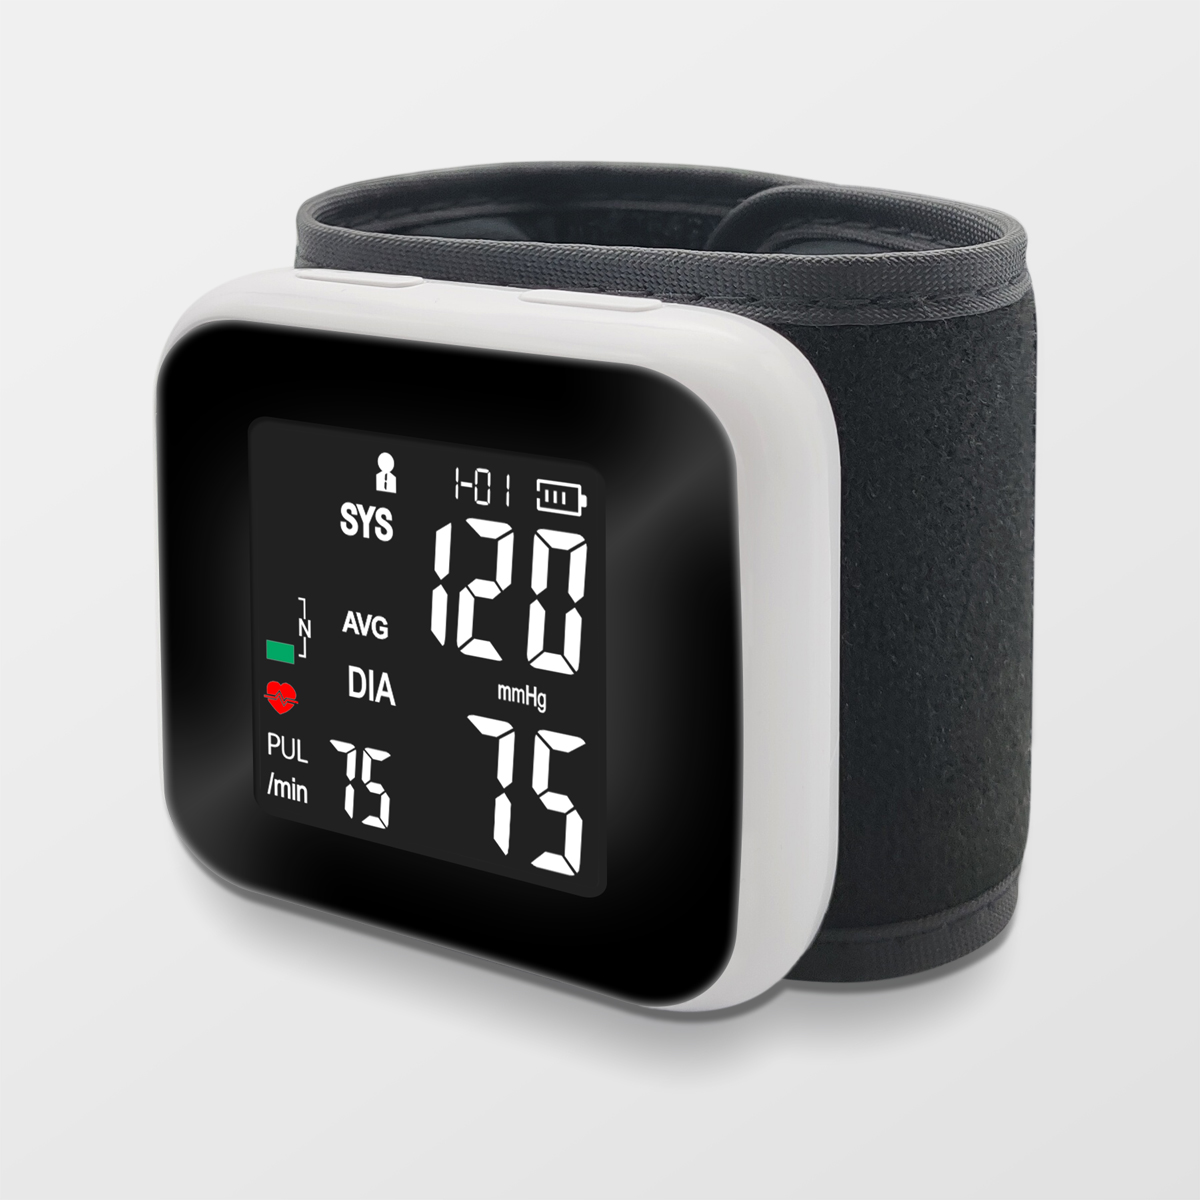 Battery Li Rechargeable High Accuray Wrist Pressure Monitor miaraka amin'ny Backlight Display